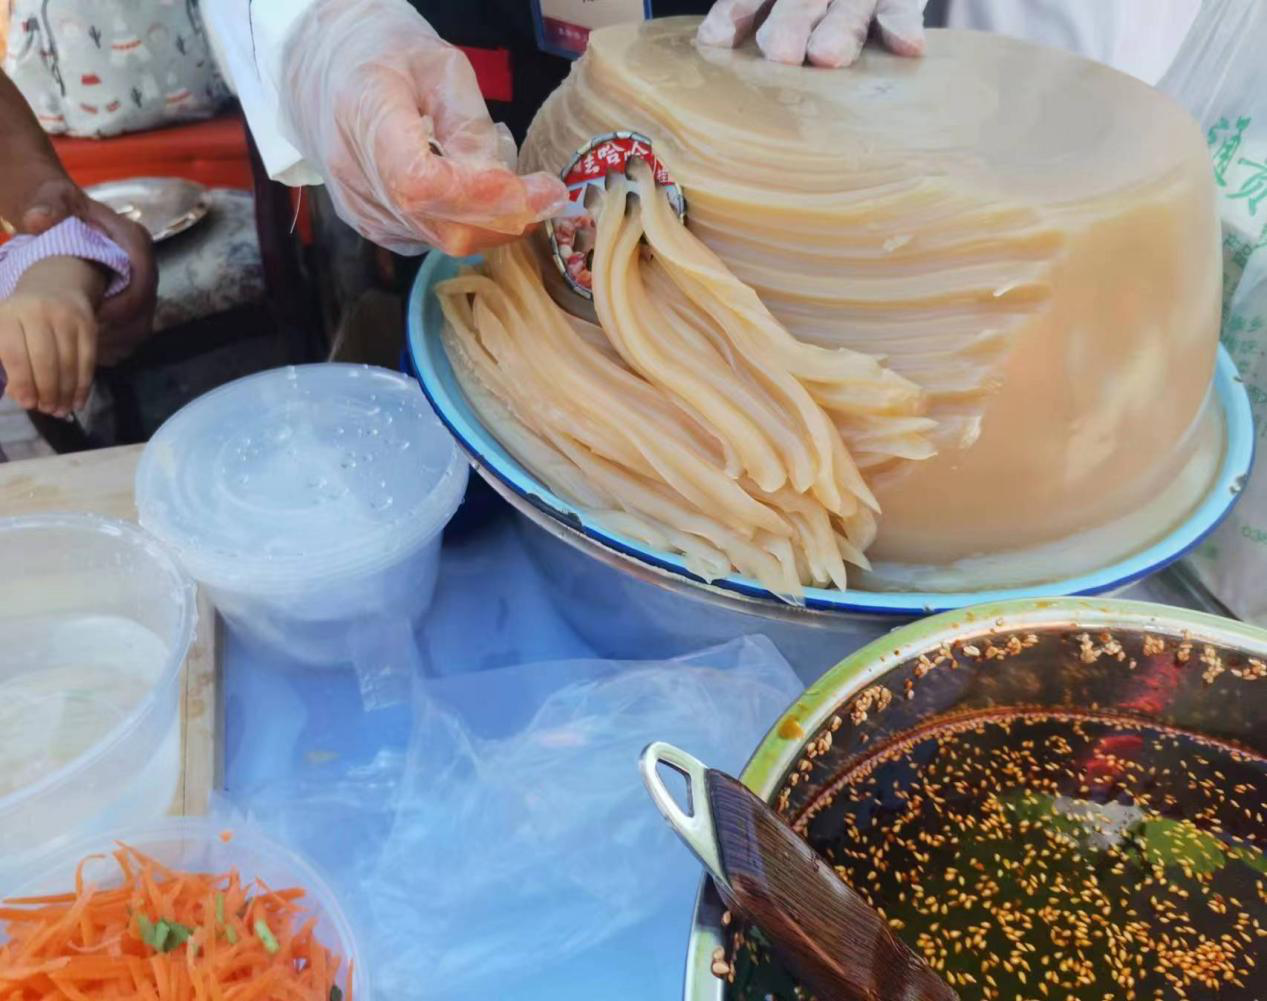 【平罗美食】市级非遗项目——扁豆粉面传统手工制作技艺